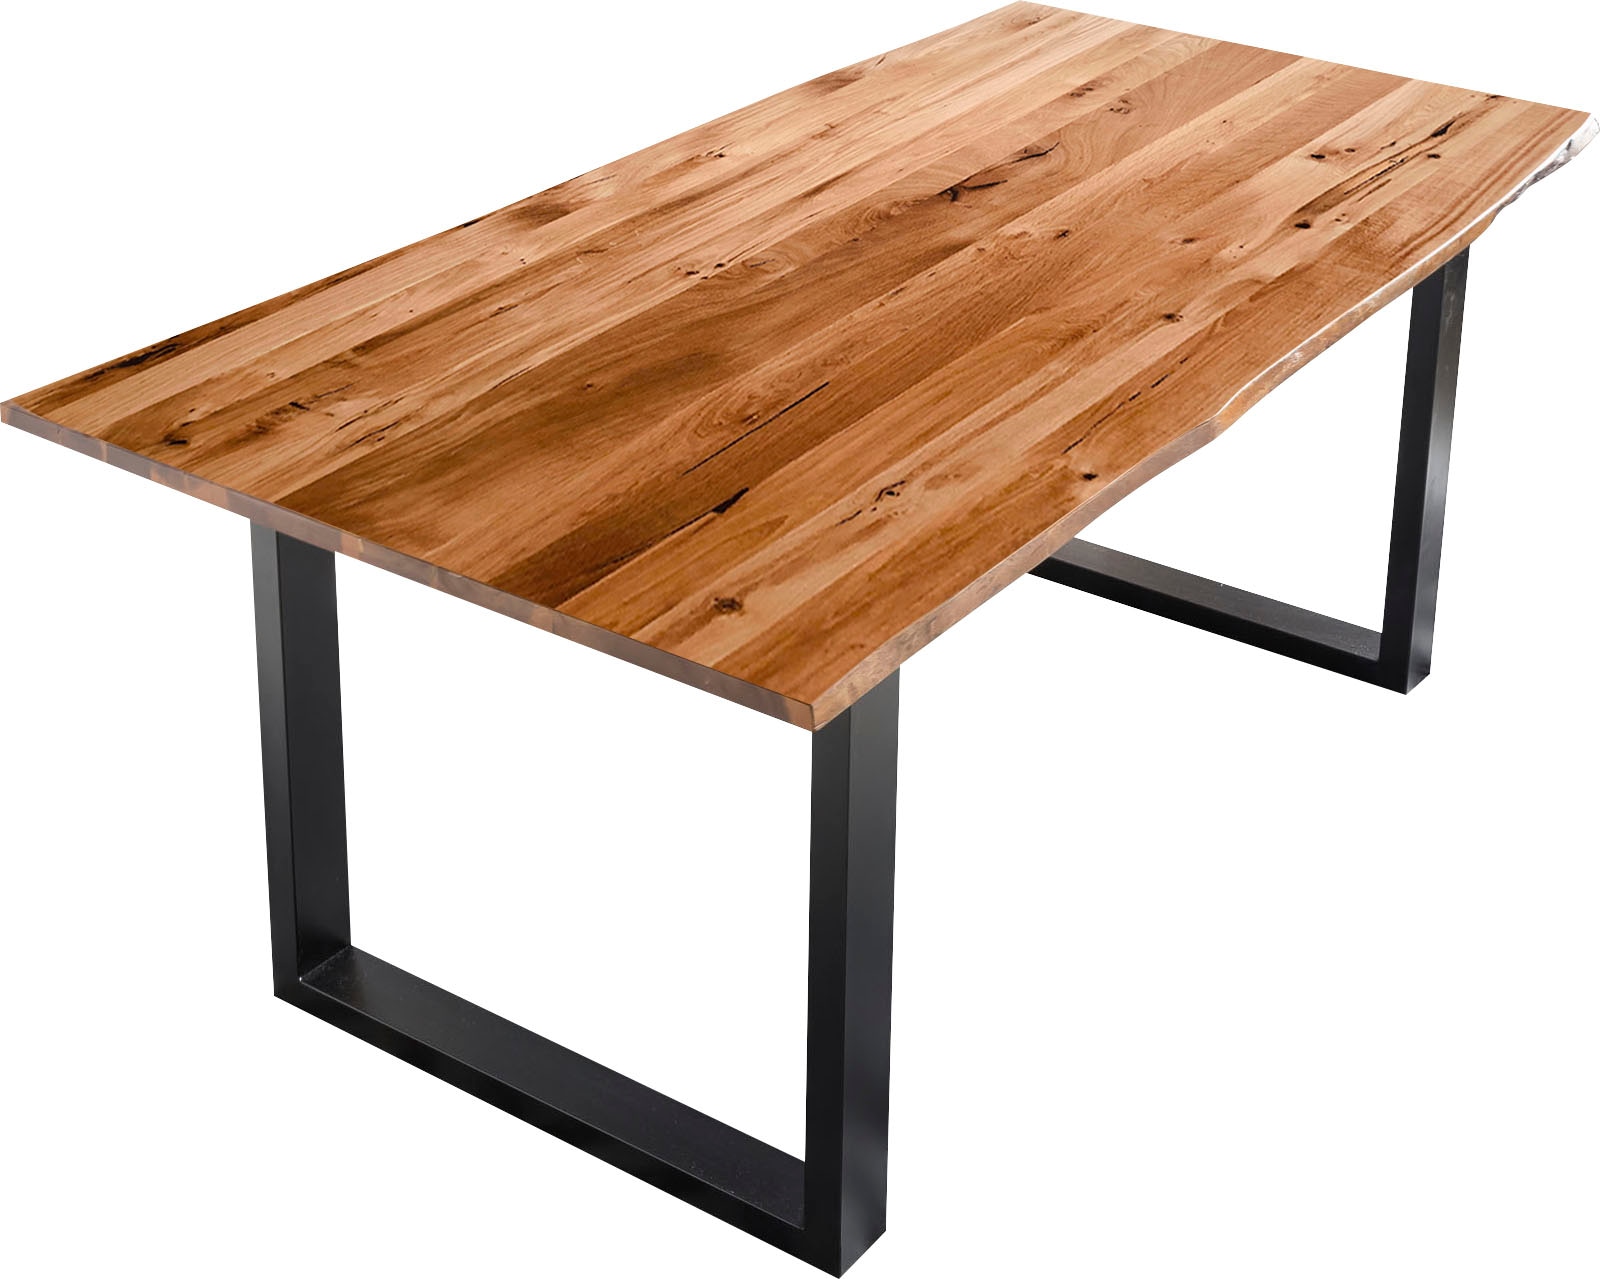 SalesFever Baumkantentisch, Sichtbare Maserung und Astlöcher, Esstisch aus  Massivholz auf Rechnung bestellen | Esstische